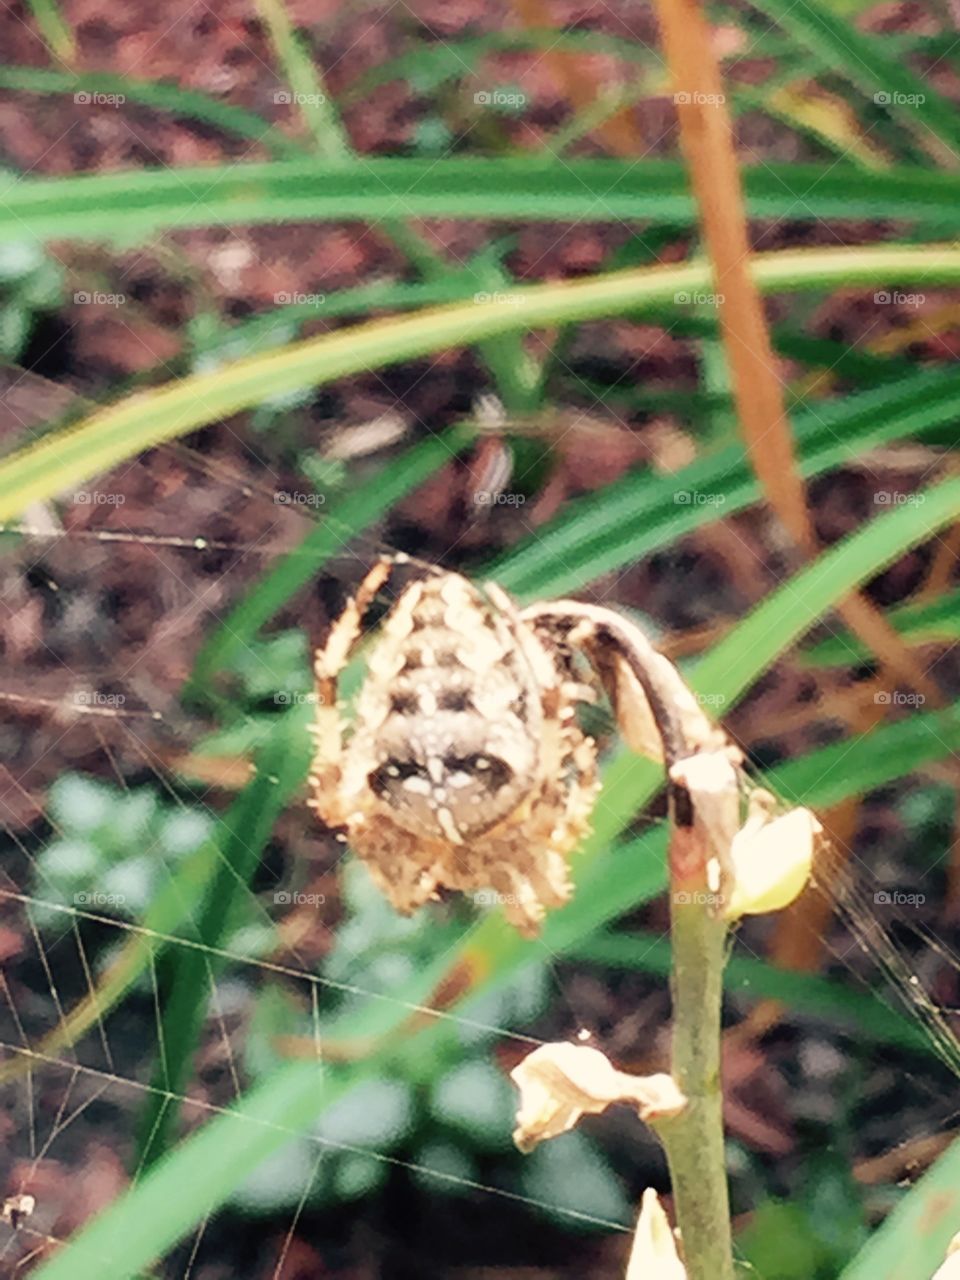 Spider spider. Spider in my garden